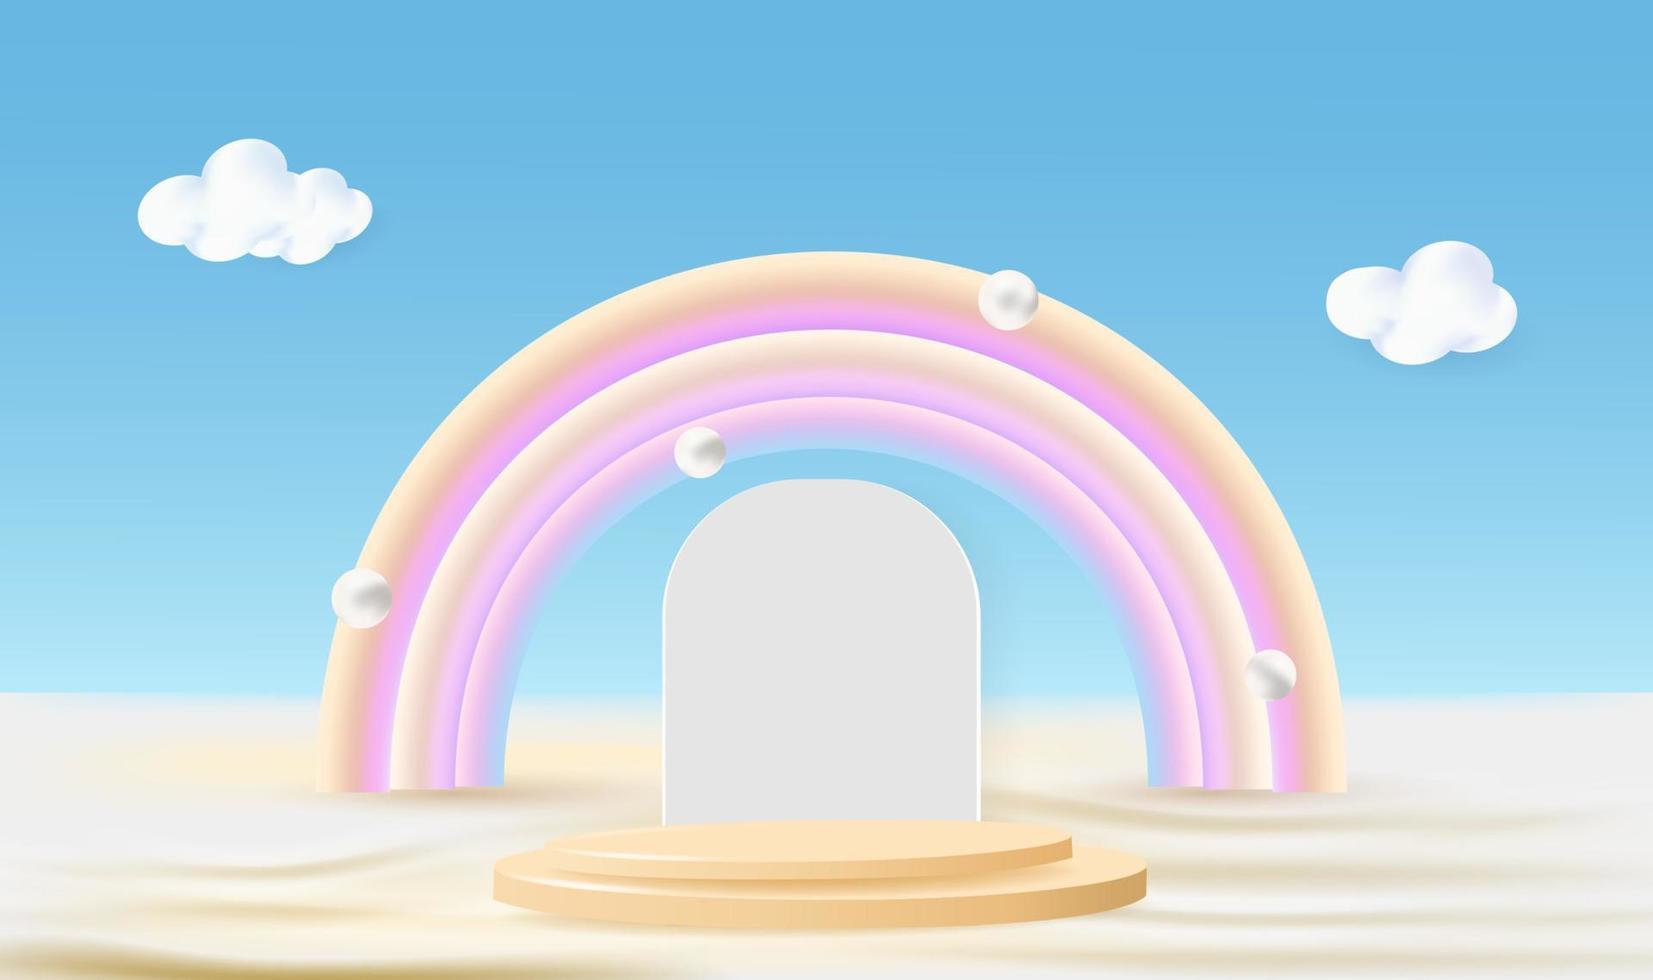 Kreispodium, Regenbogen am Himmel zum Präsentieren süßer Produkte. vektor